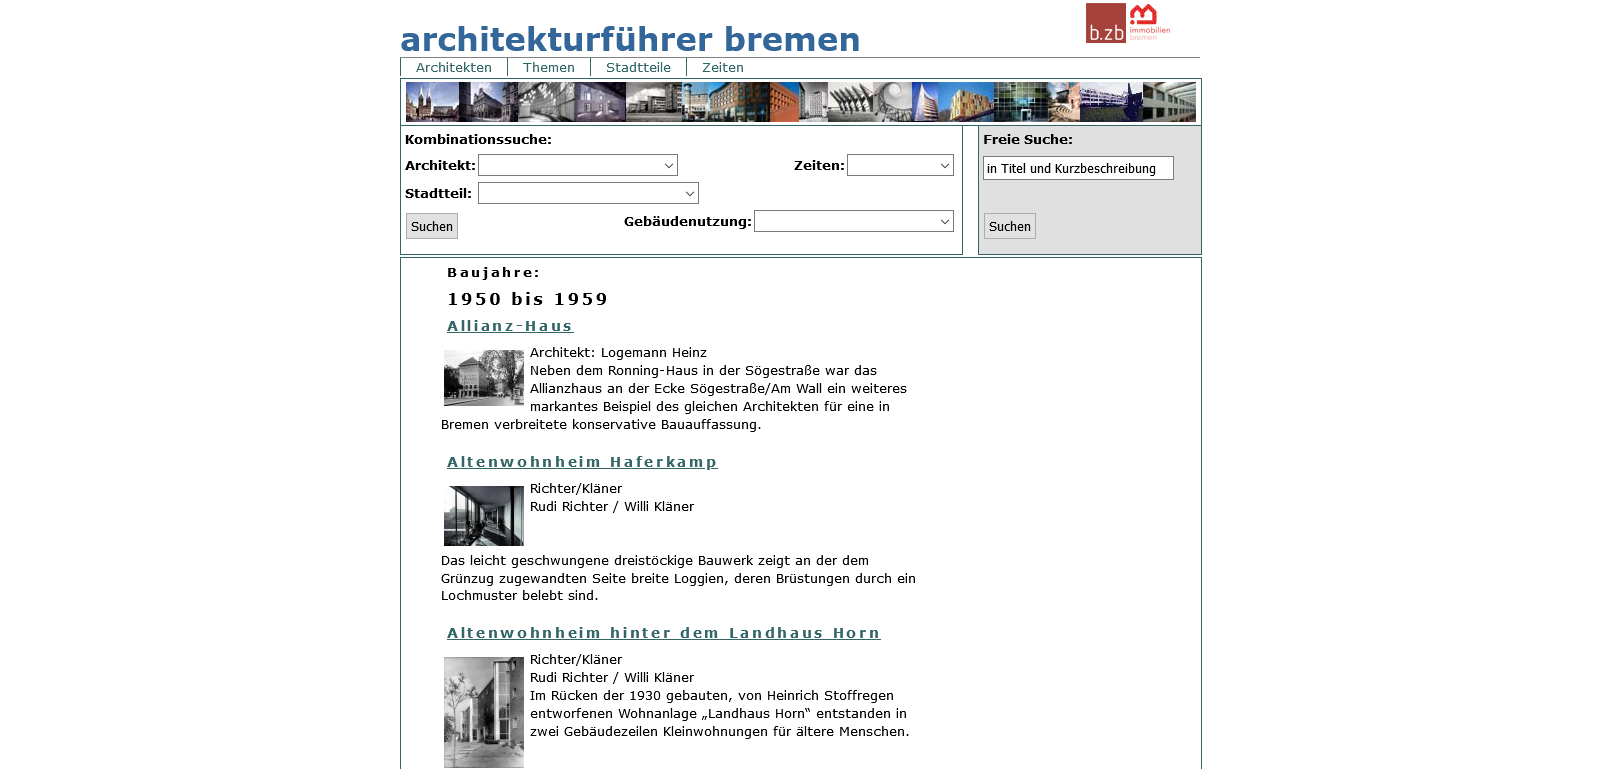 Architekturführer Bremen